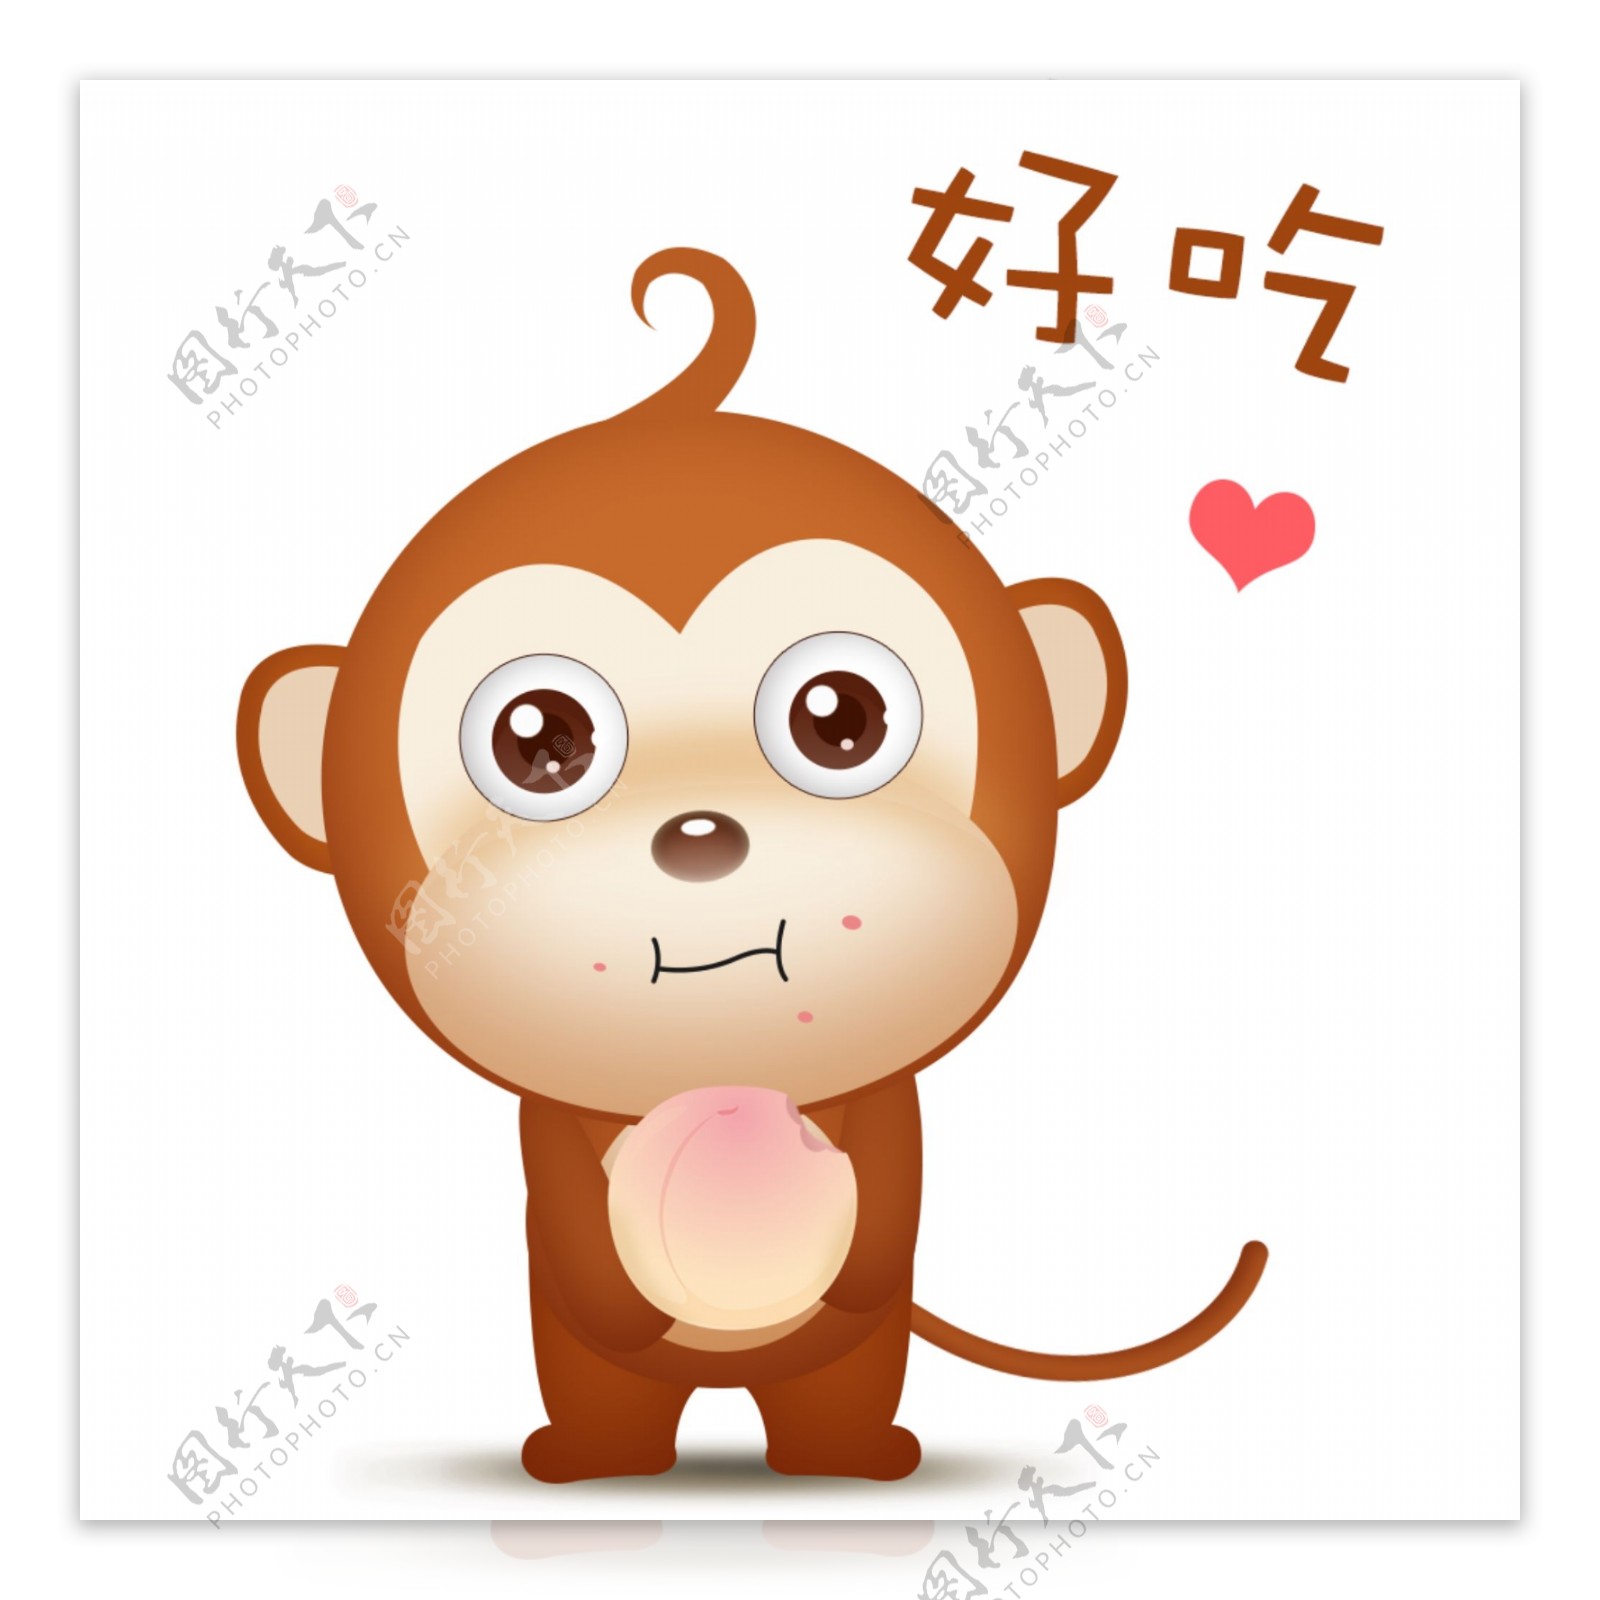 可爱萌萌哒微立体小猴子ip表情包哒哒